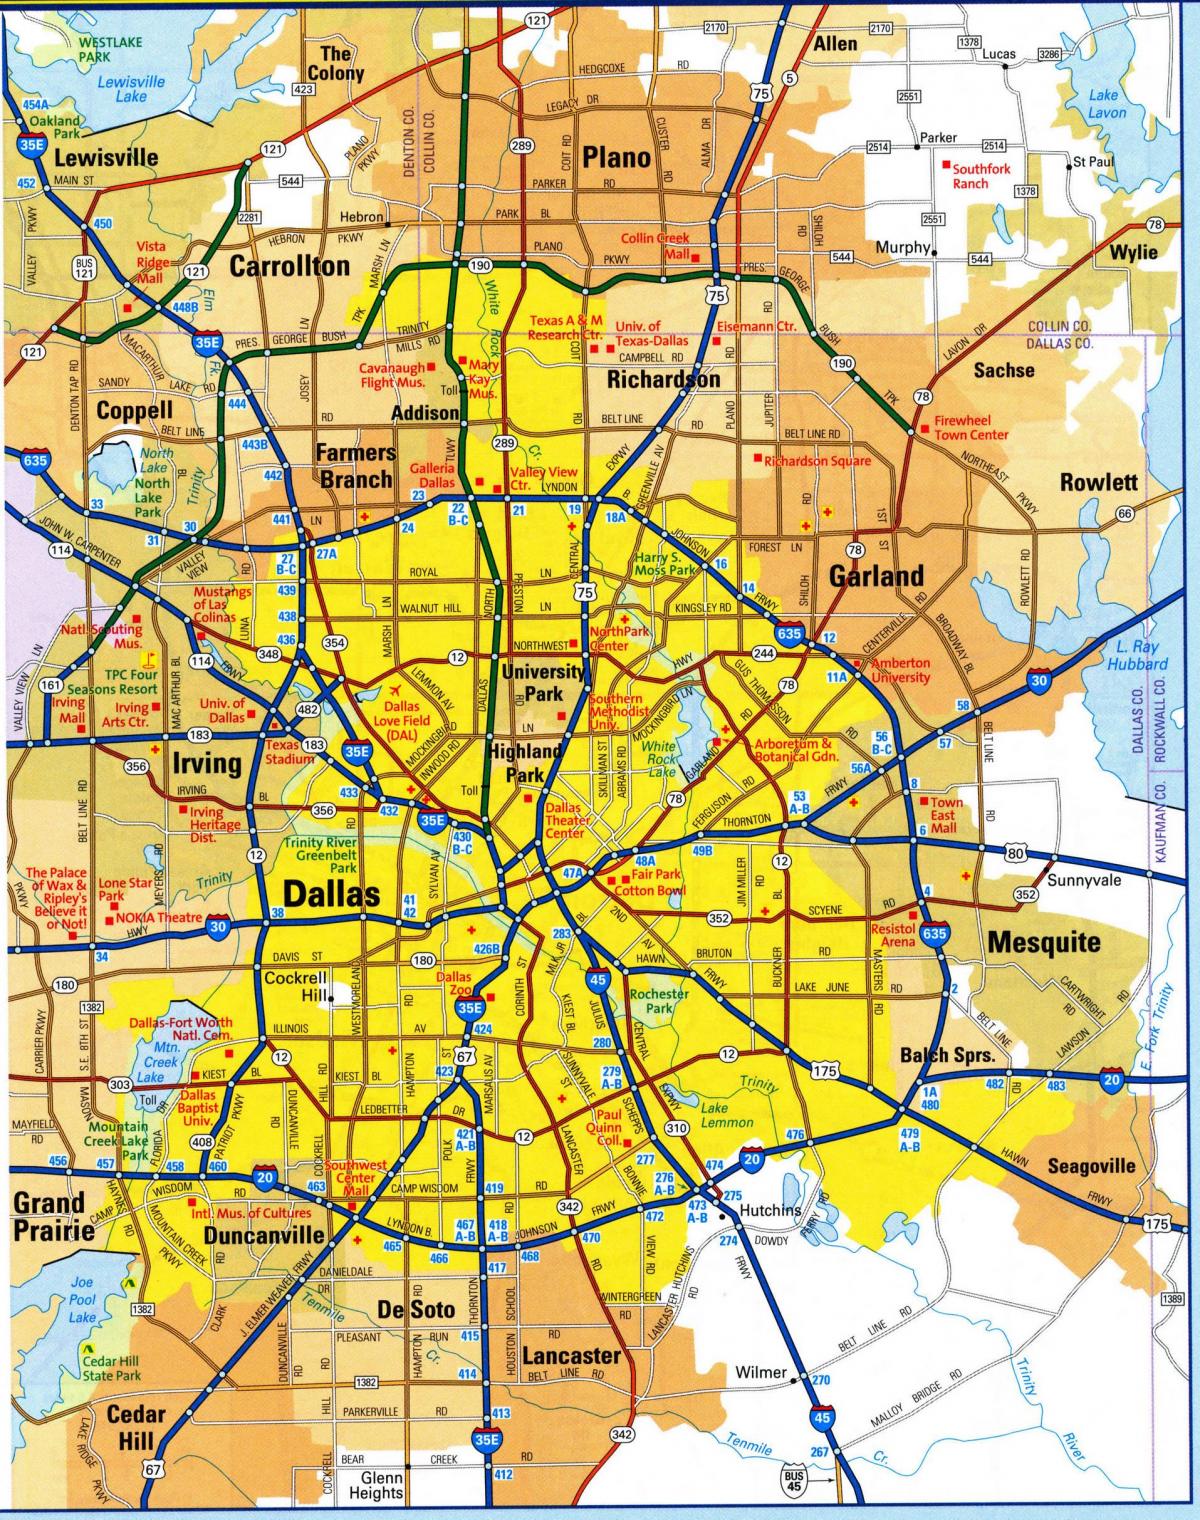 Mappa delle stazioni del tram di Dallas